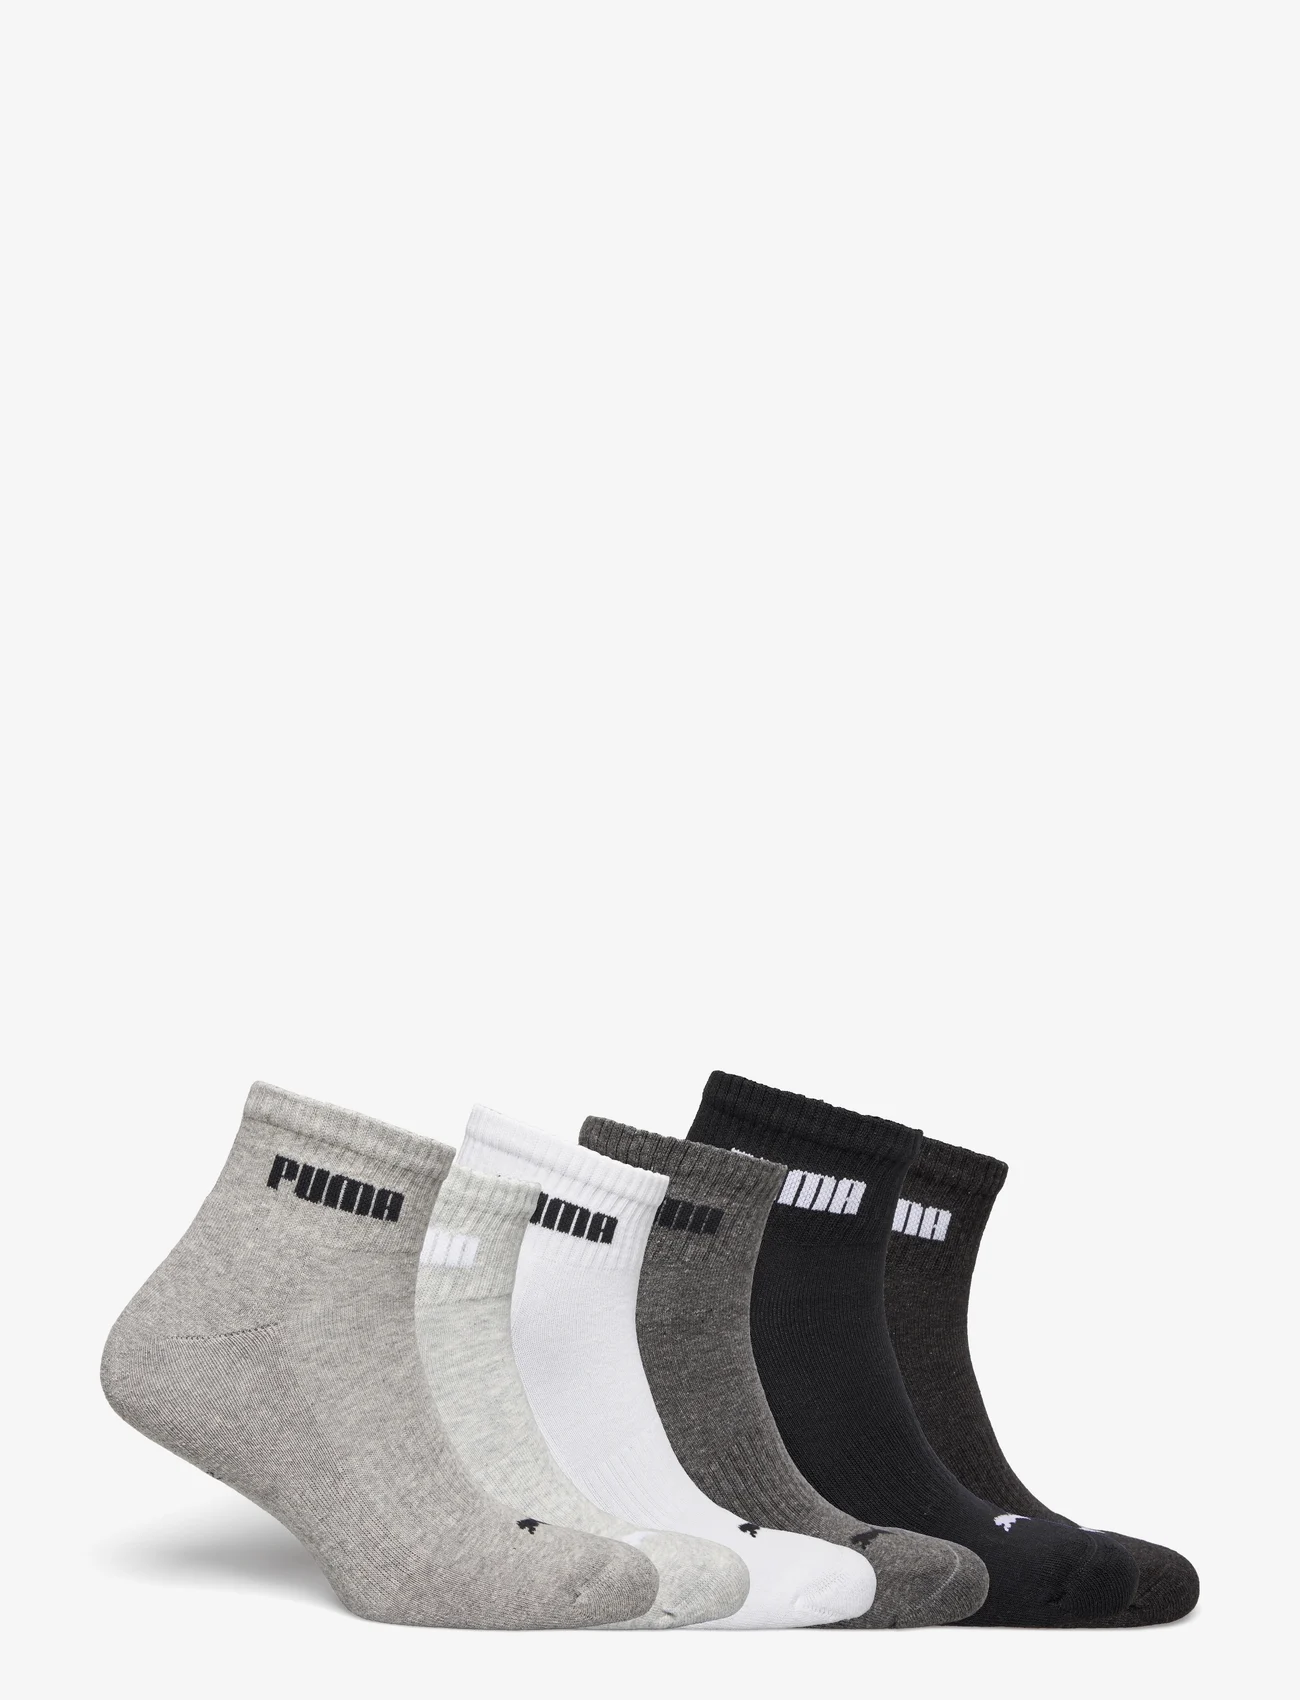 PUMA - PUMA UNISEX NEW GENERATION CUSHIONE - tavalliset sukat - white / grey / black - 1